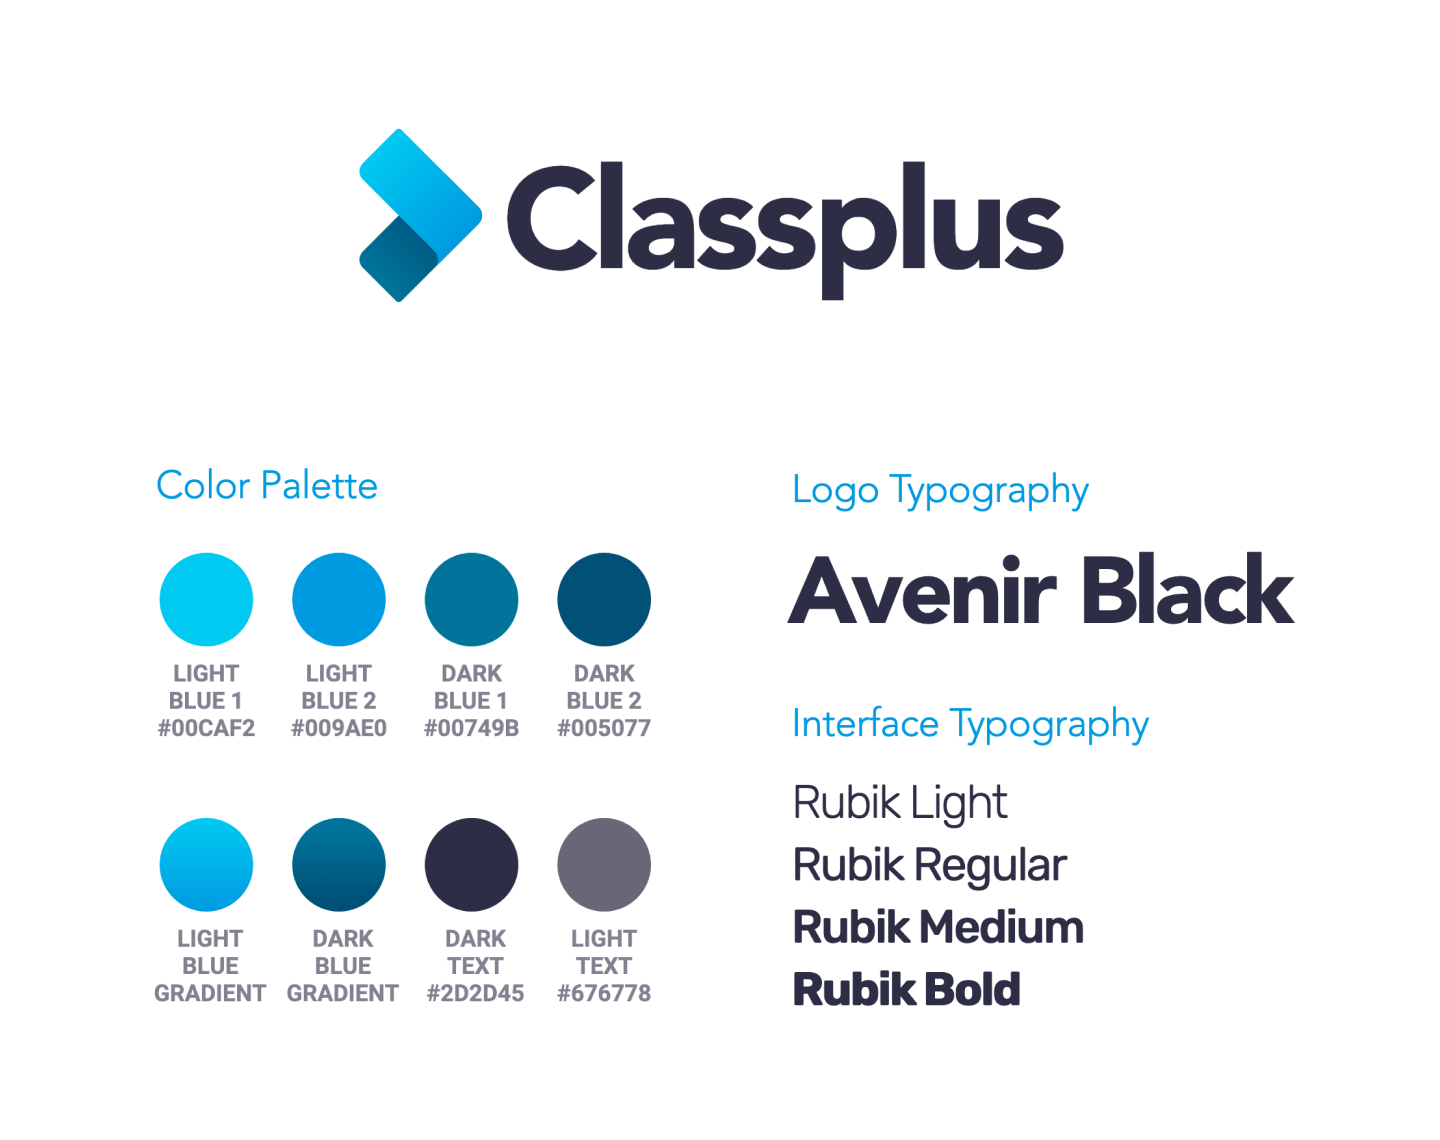 Classplus logo